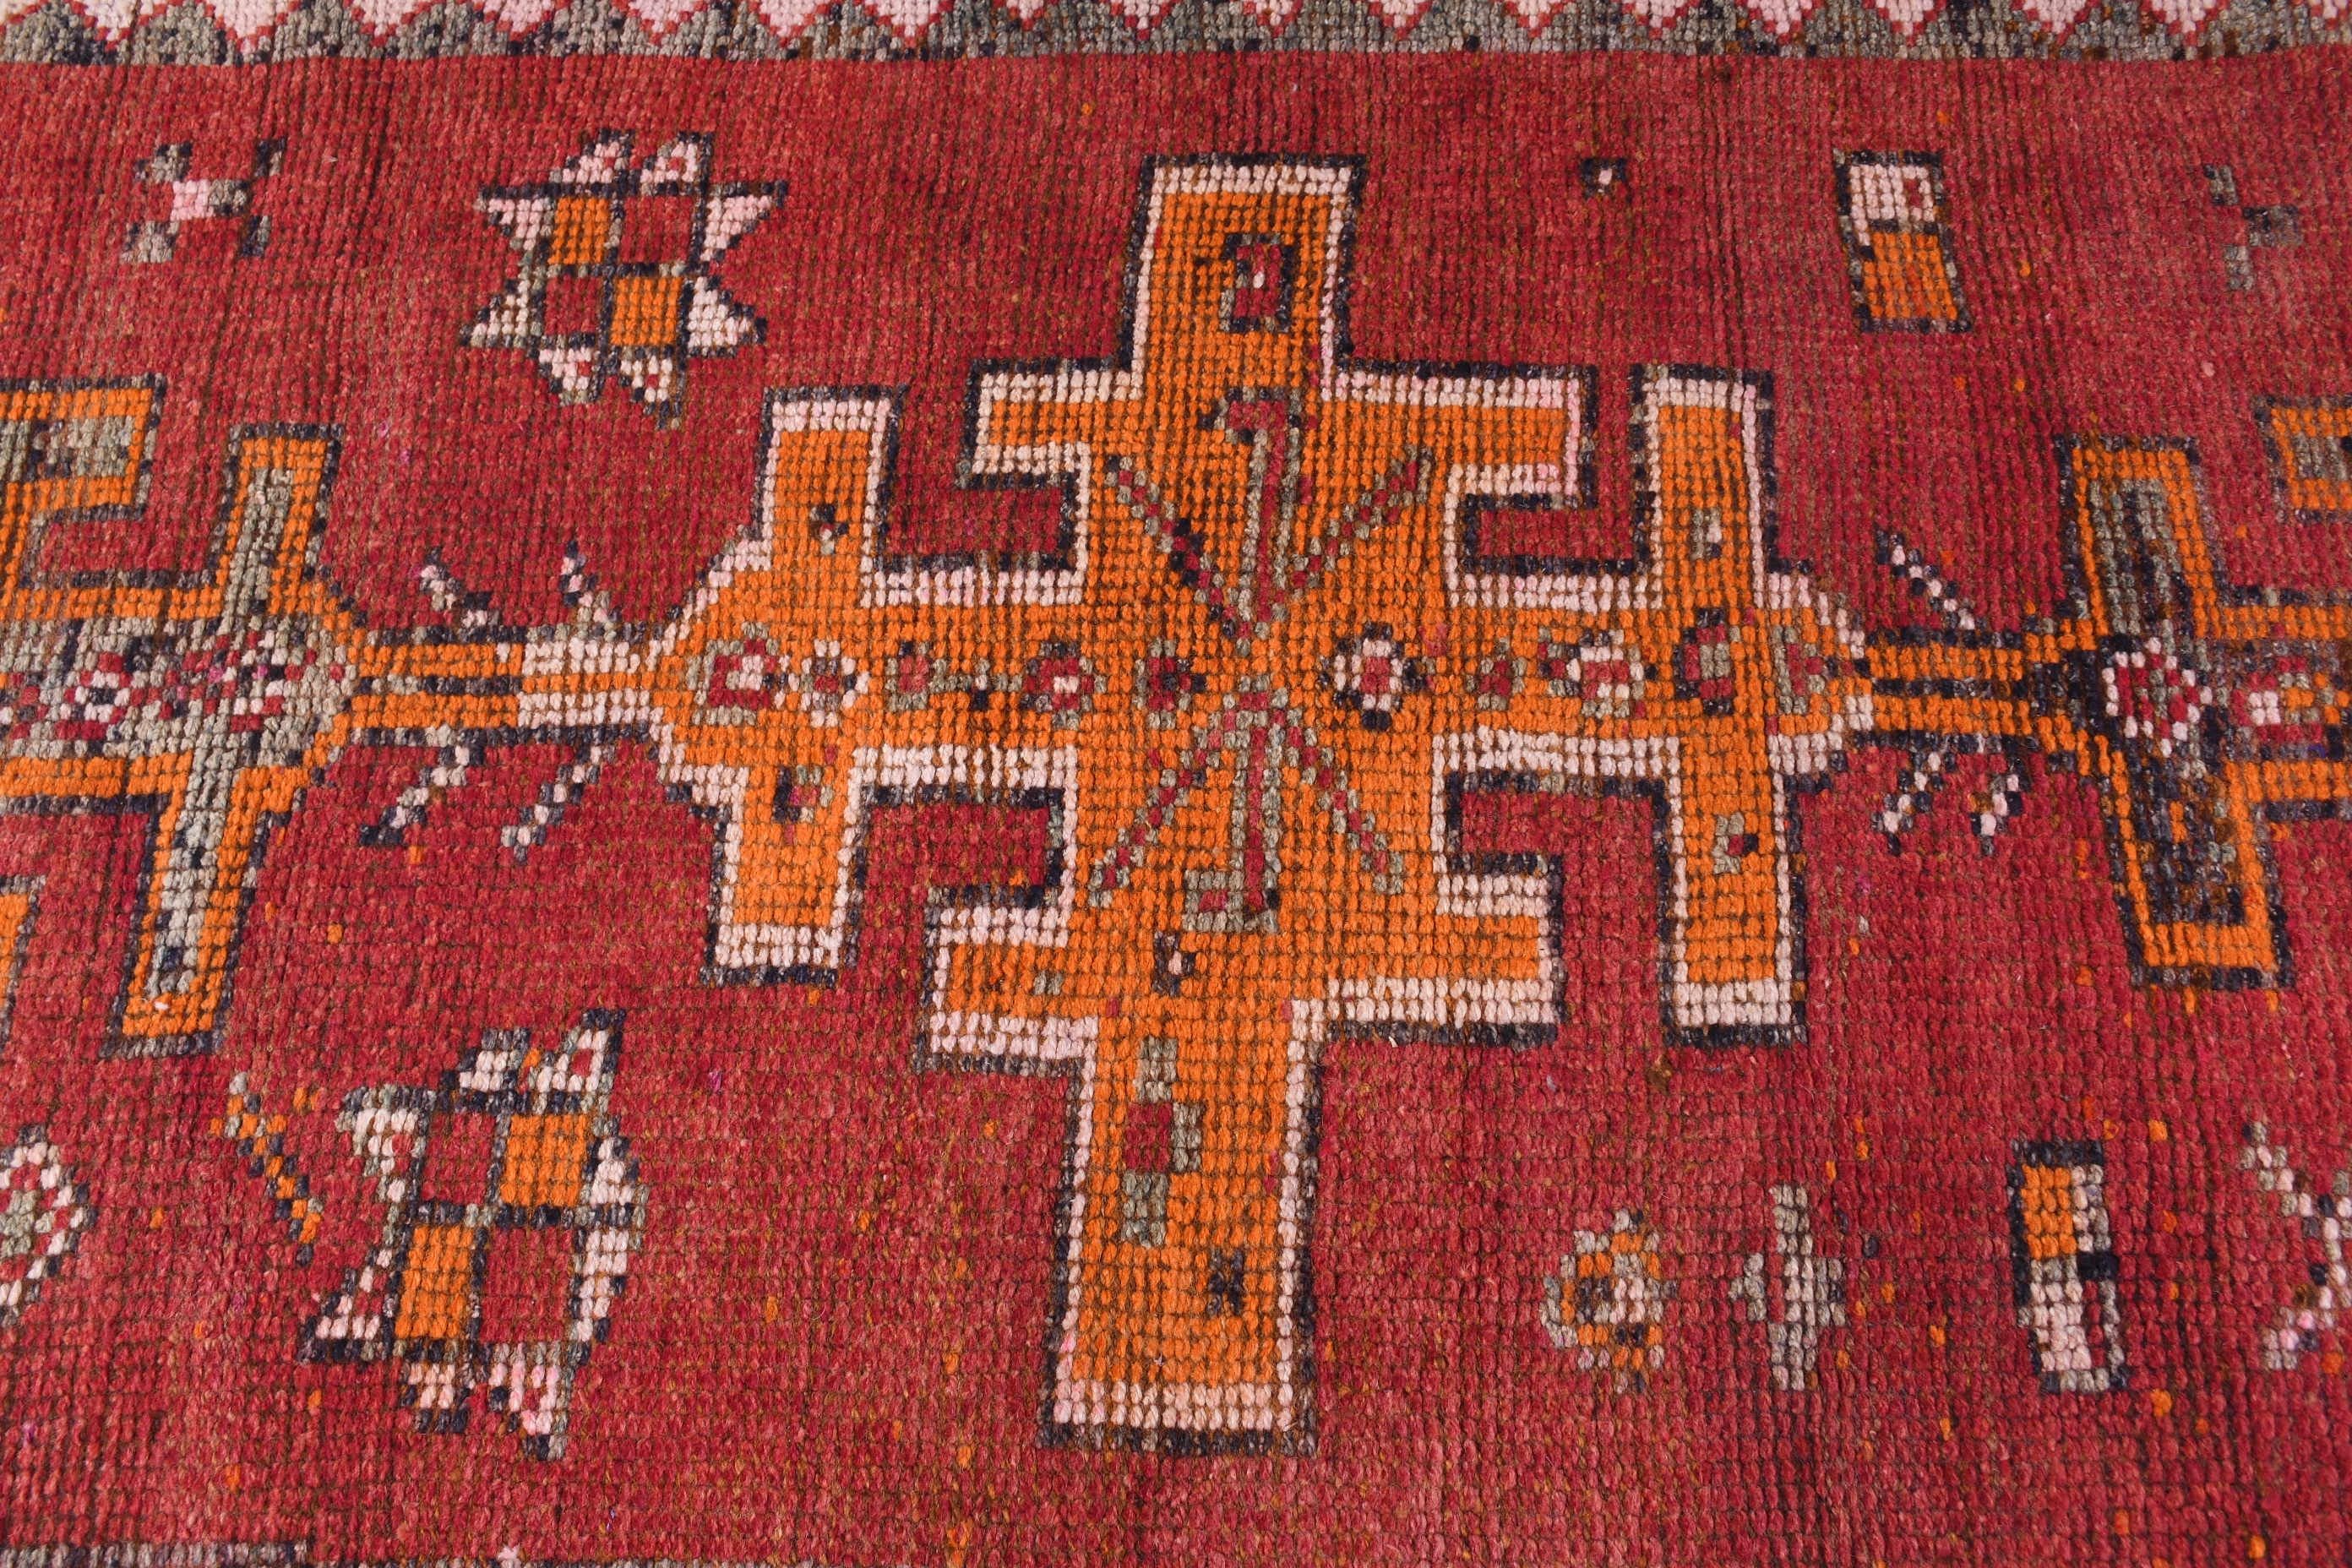 Red Moroccan Rug, Vintage Rugs, Rugs for Runner, Stair Rugs, Corridor Rugs, Floor Rugs, Turkish Rug, 3.3x8.7 ft Runner Rug, Kitchen Rug